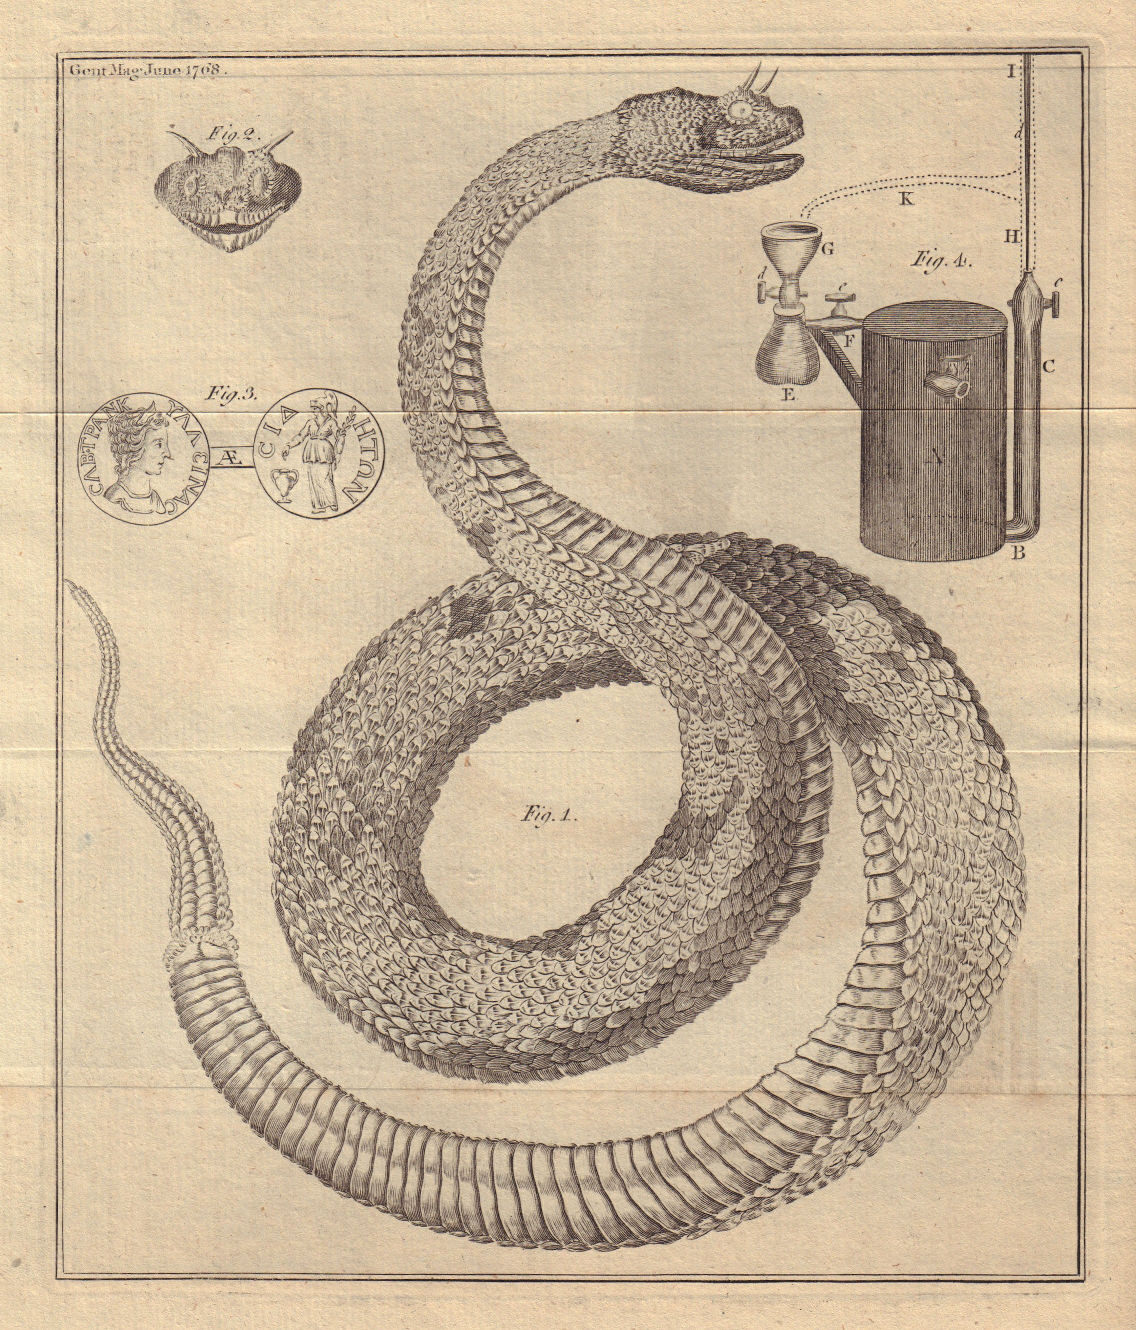 Horned desert viper, Cerastes cerastes. Sabina Tranquillina Roman coin 1768